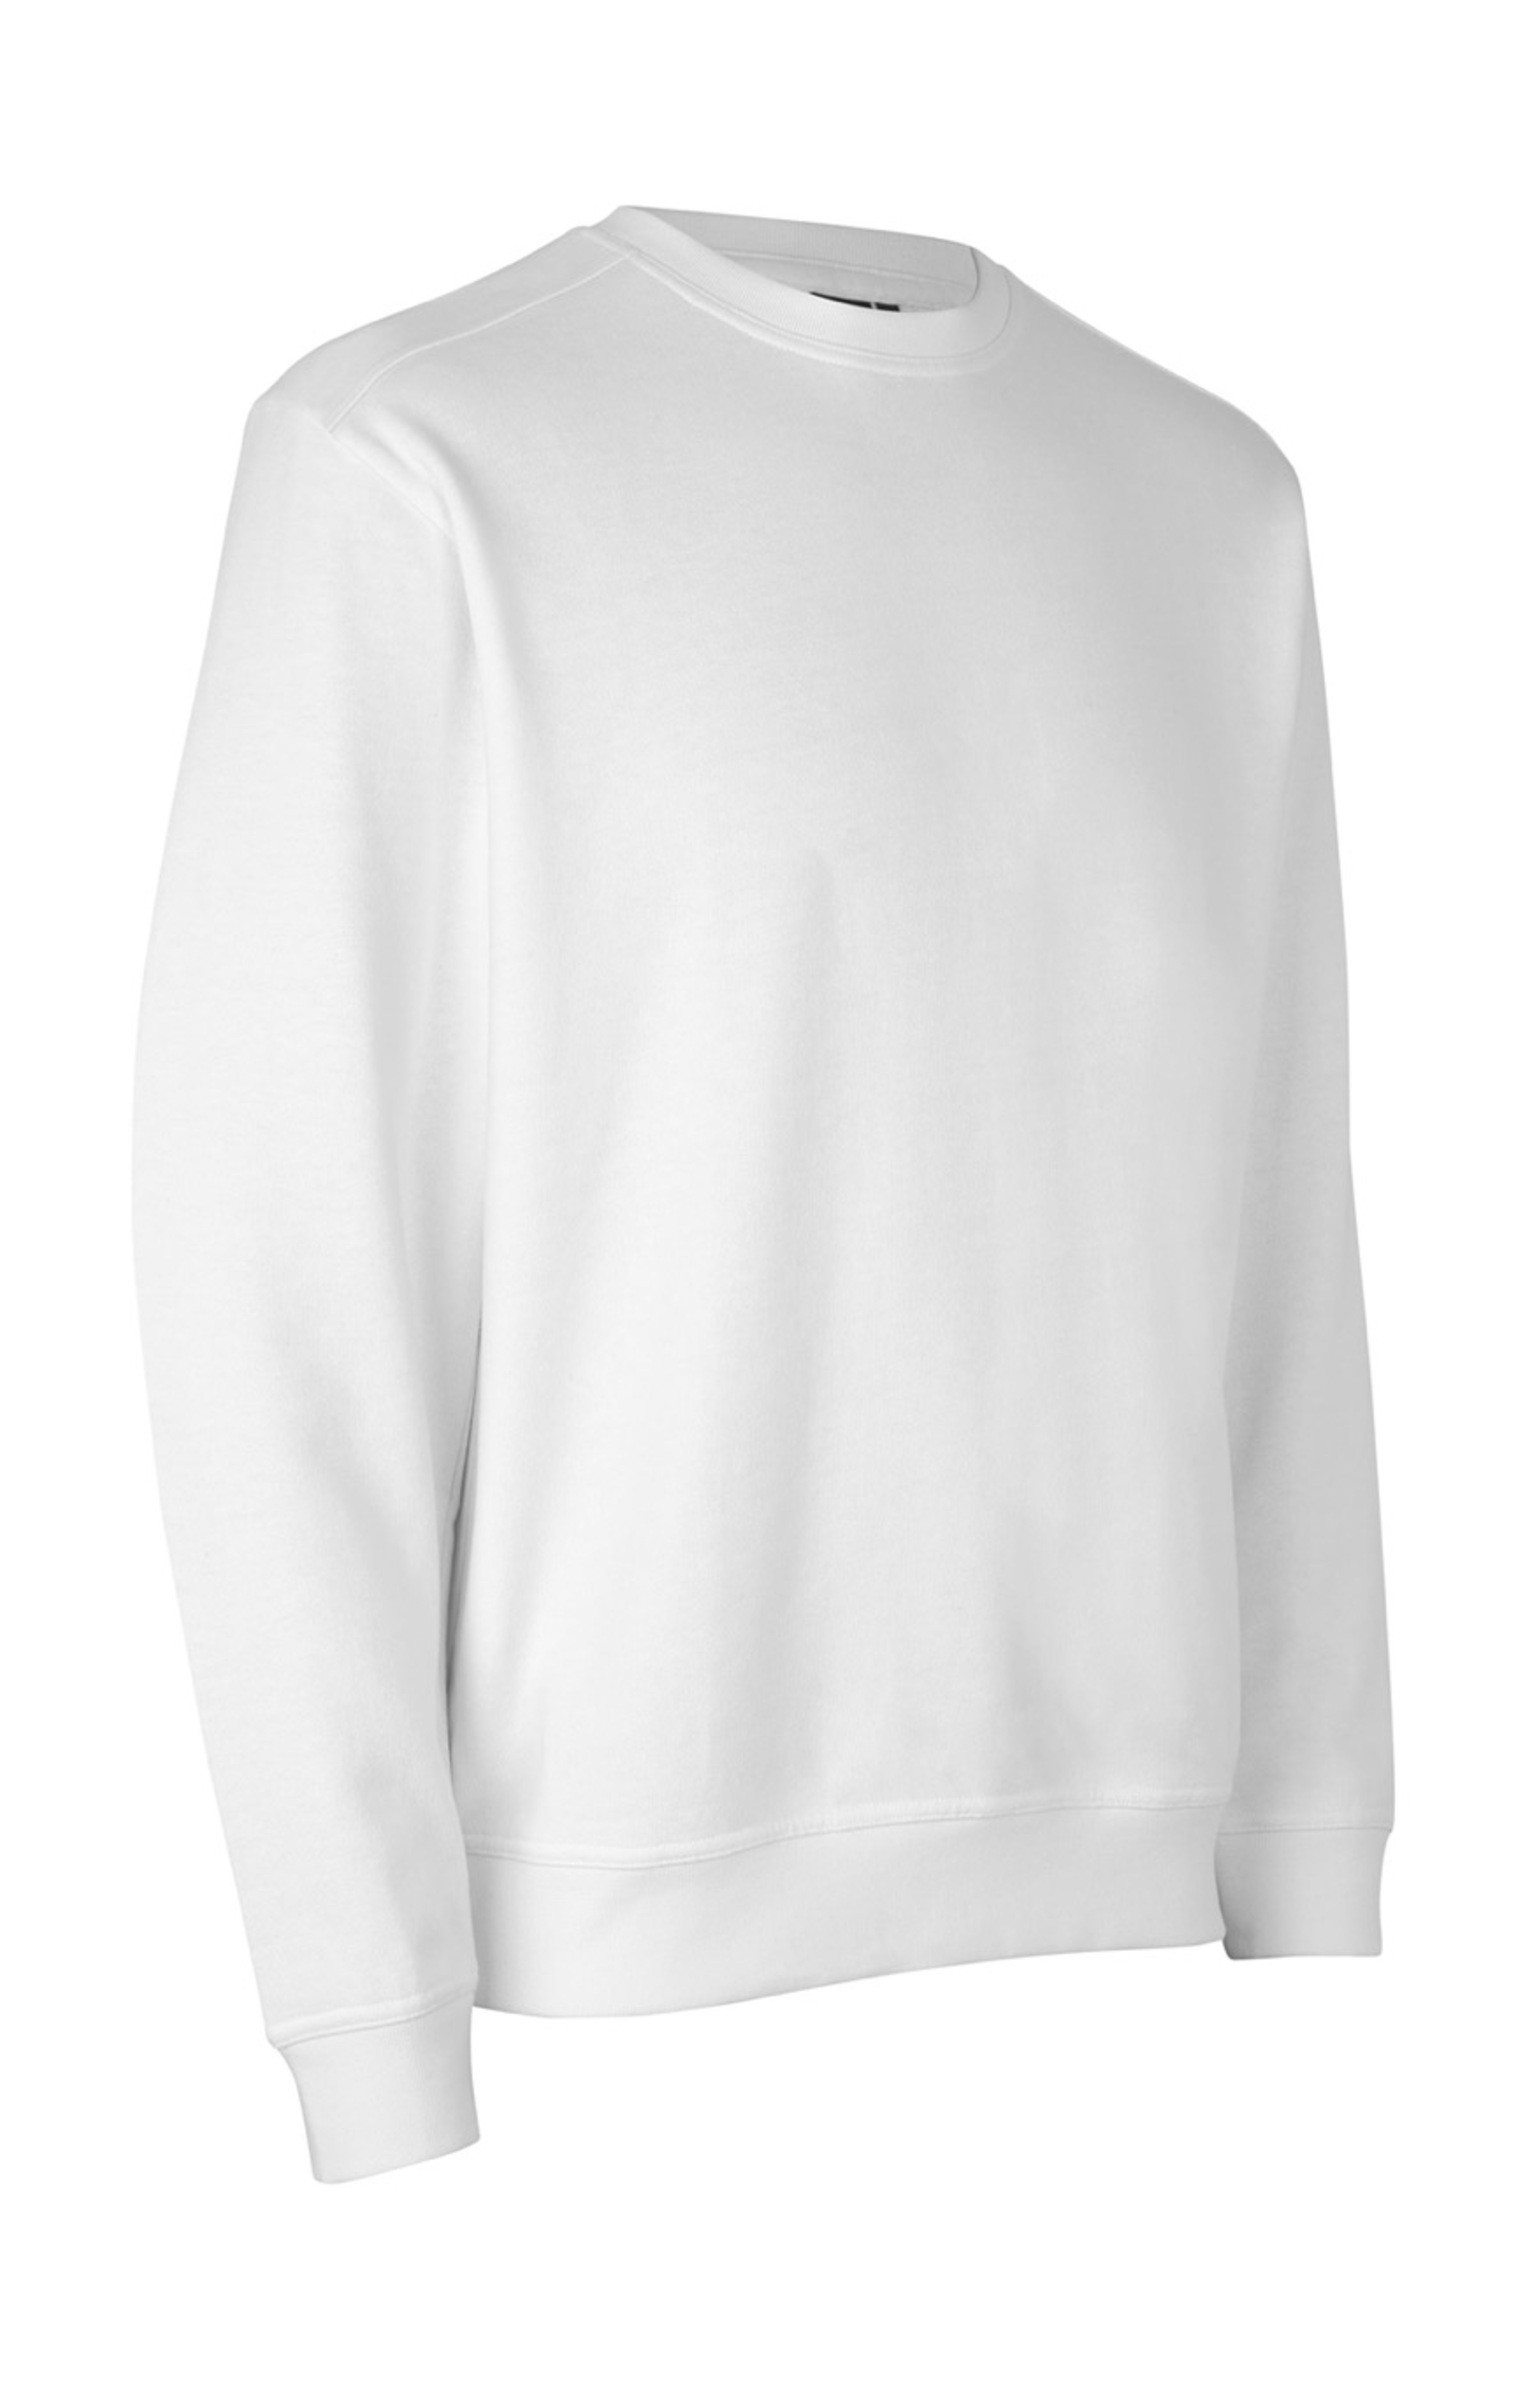 Idwear Pro Wear Care Sweatshirt